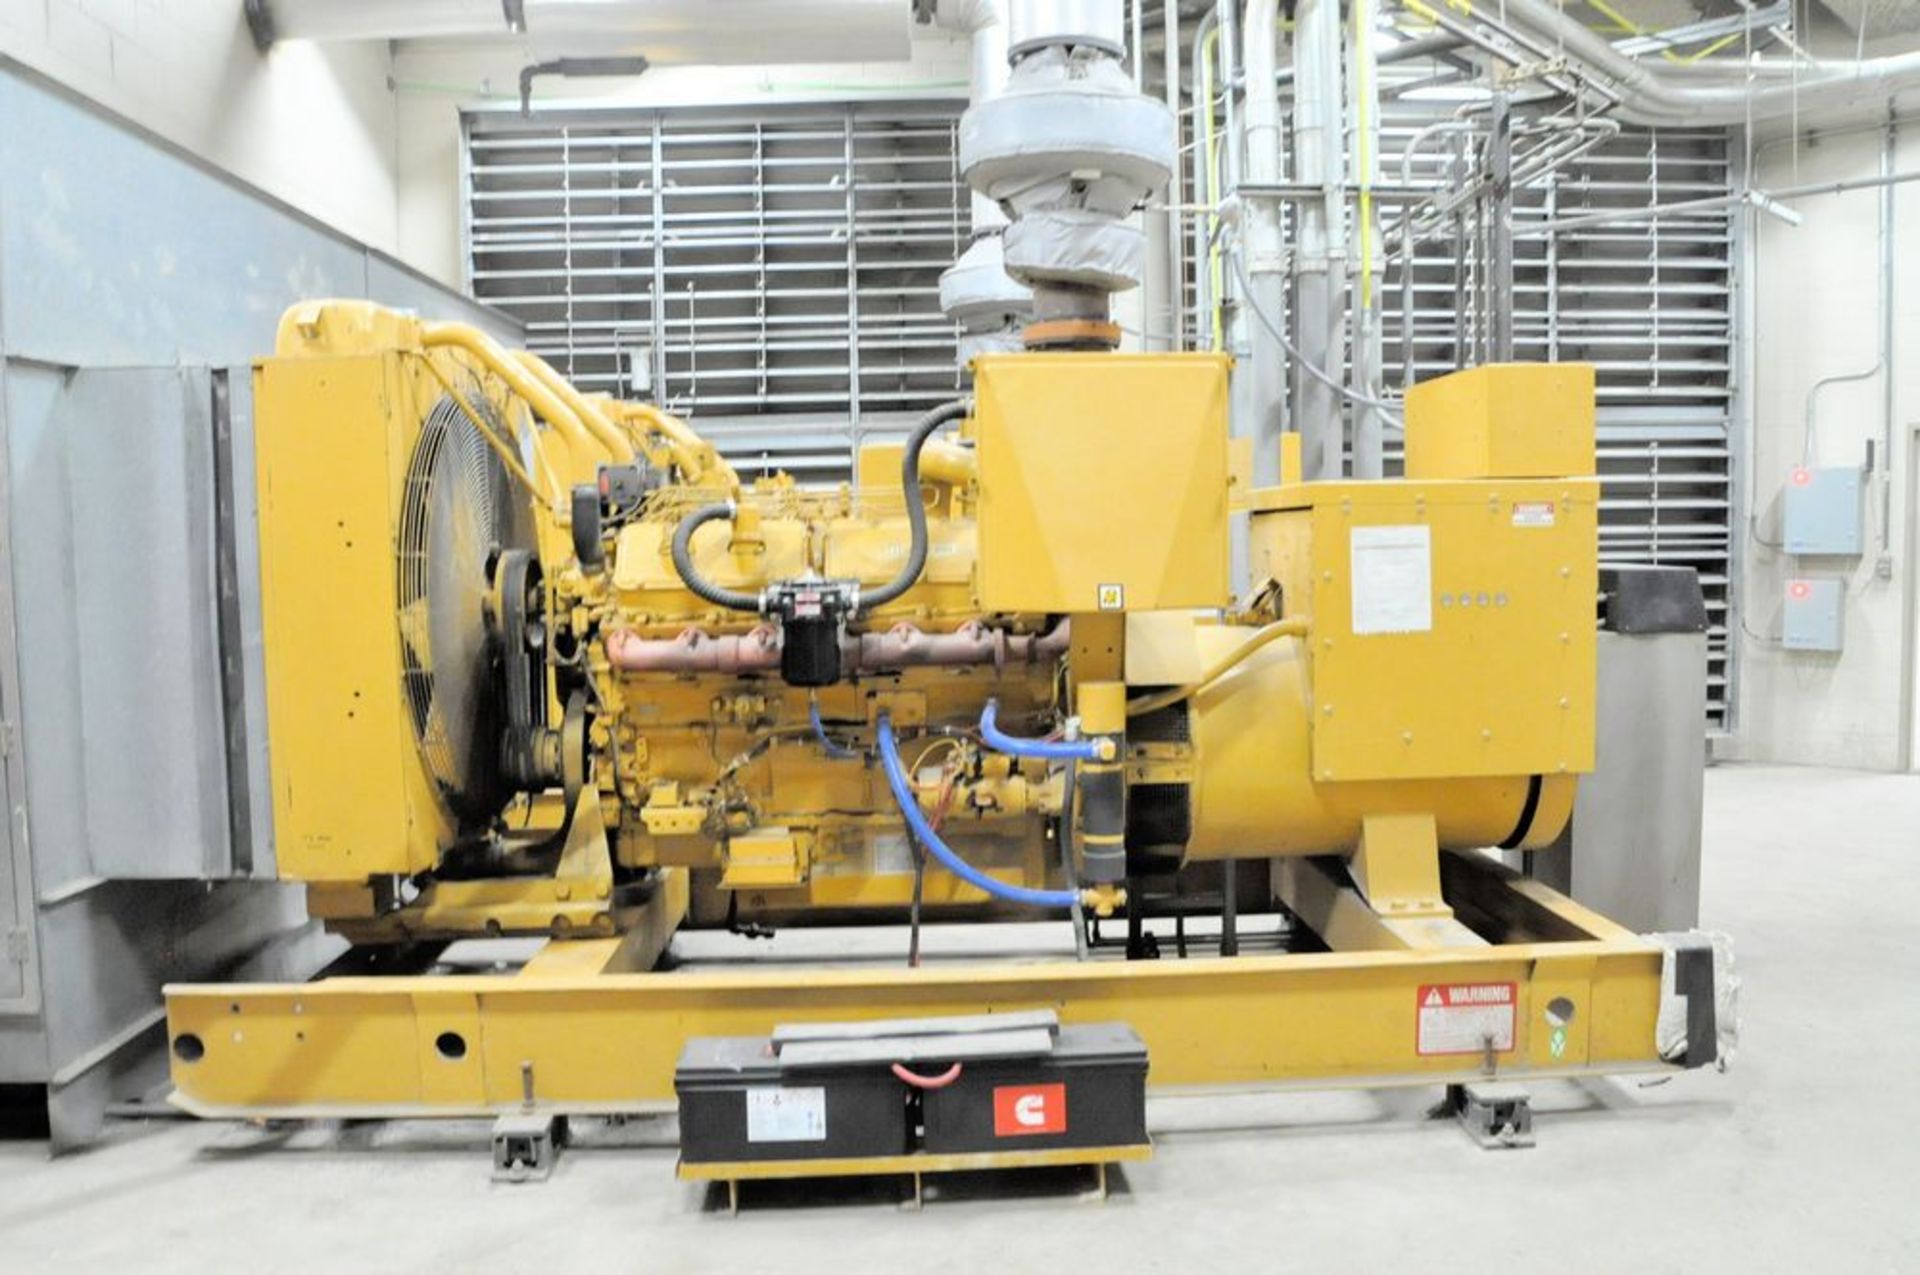 Caterpillar Model SR4, 650-KVA 520-KW Diesel Powered Standby Generator, S/n 5N5078, 520 KW - Image 2 of 8